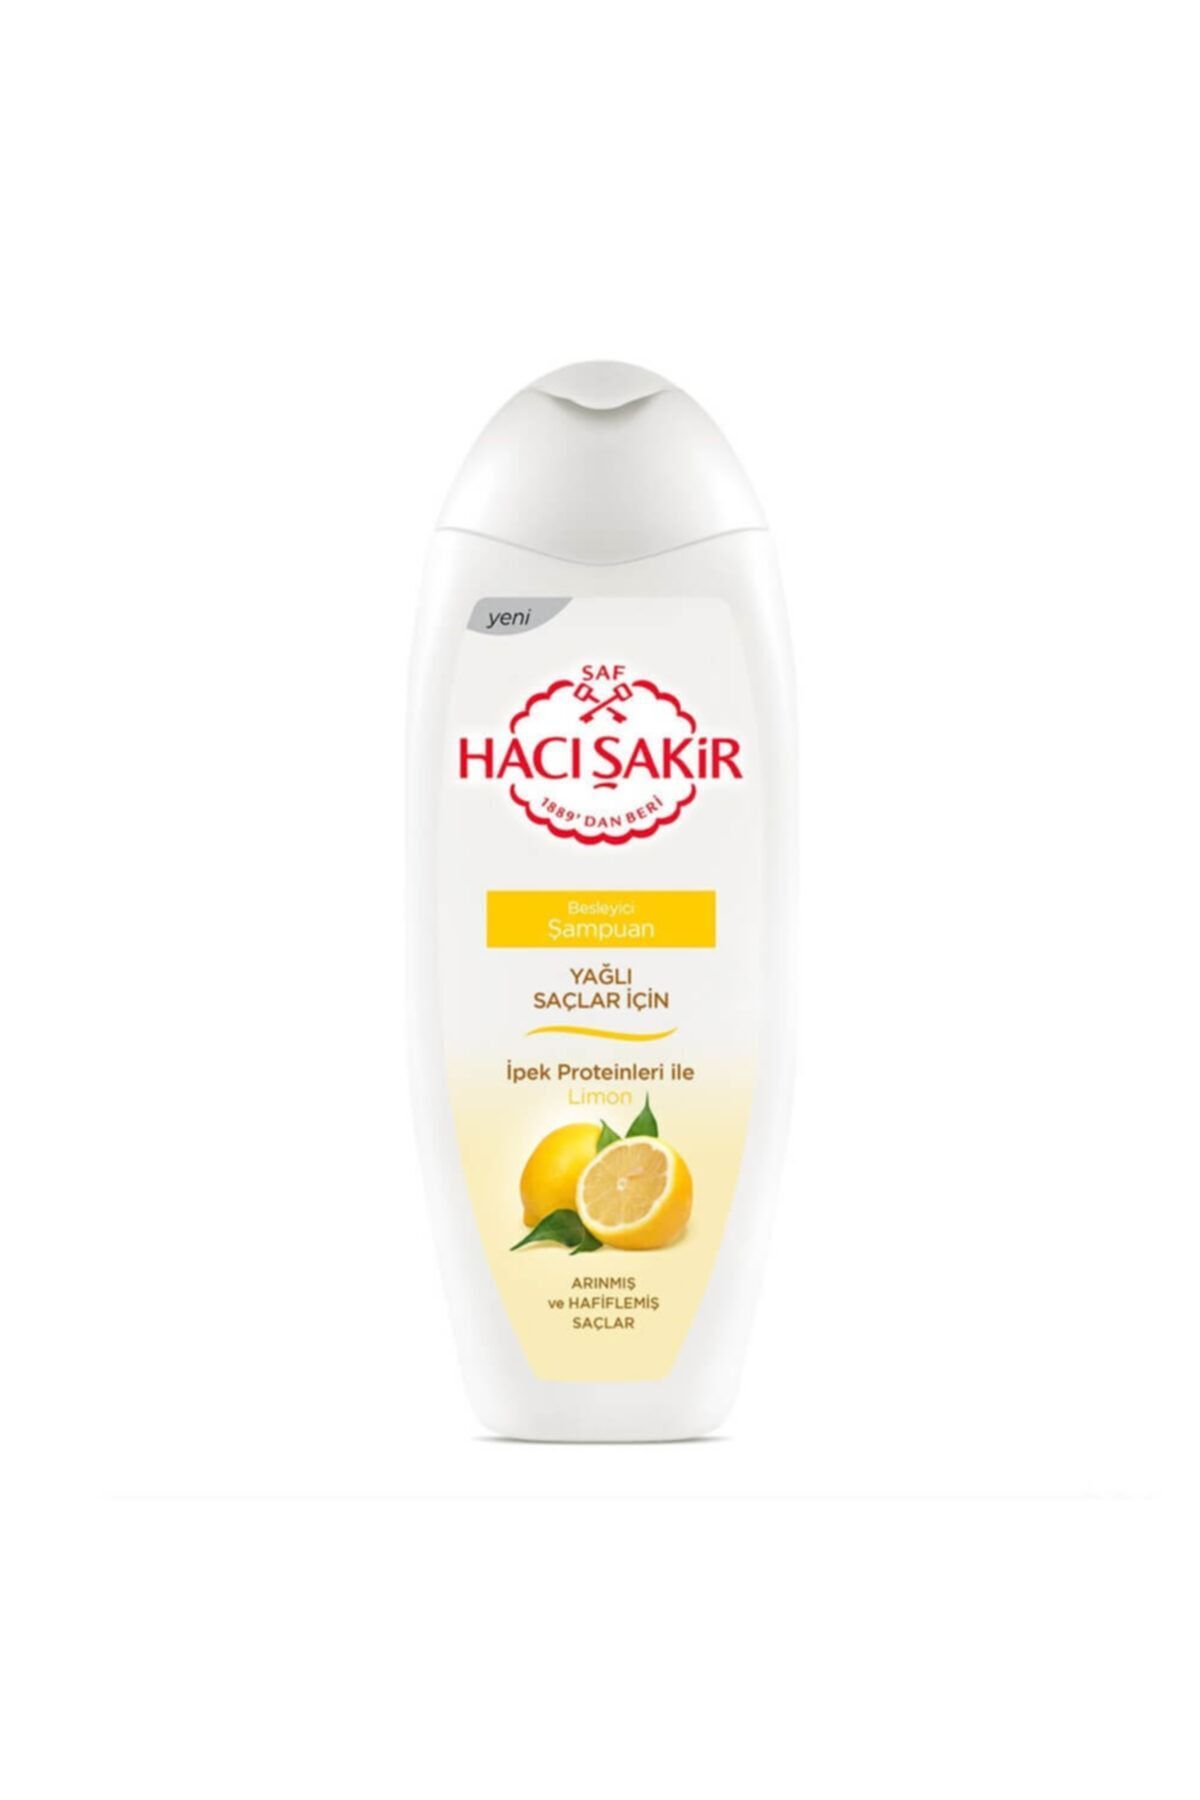 Hacı Şakir Yağlı Saçlar için Limon Besleyici Şampuan 500 ml